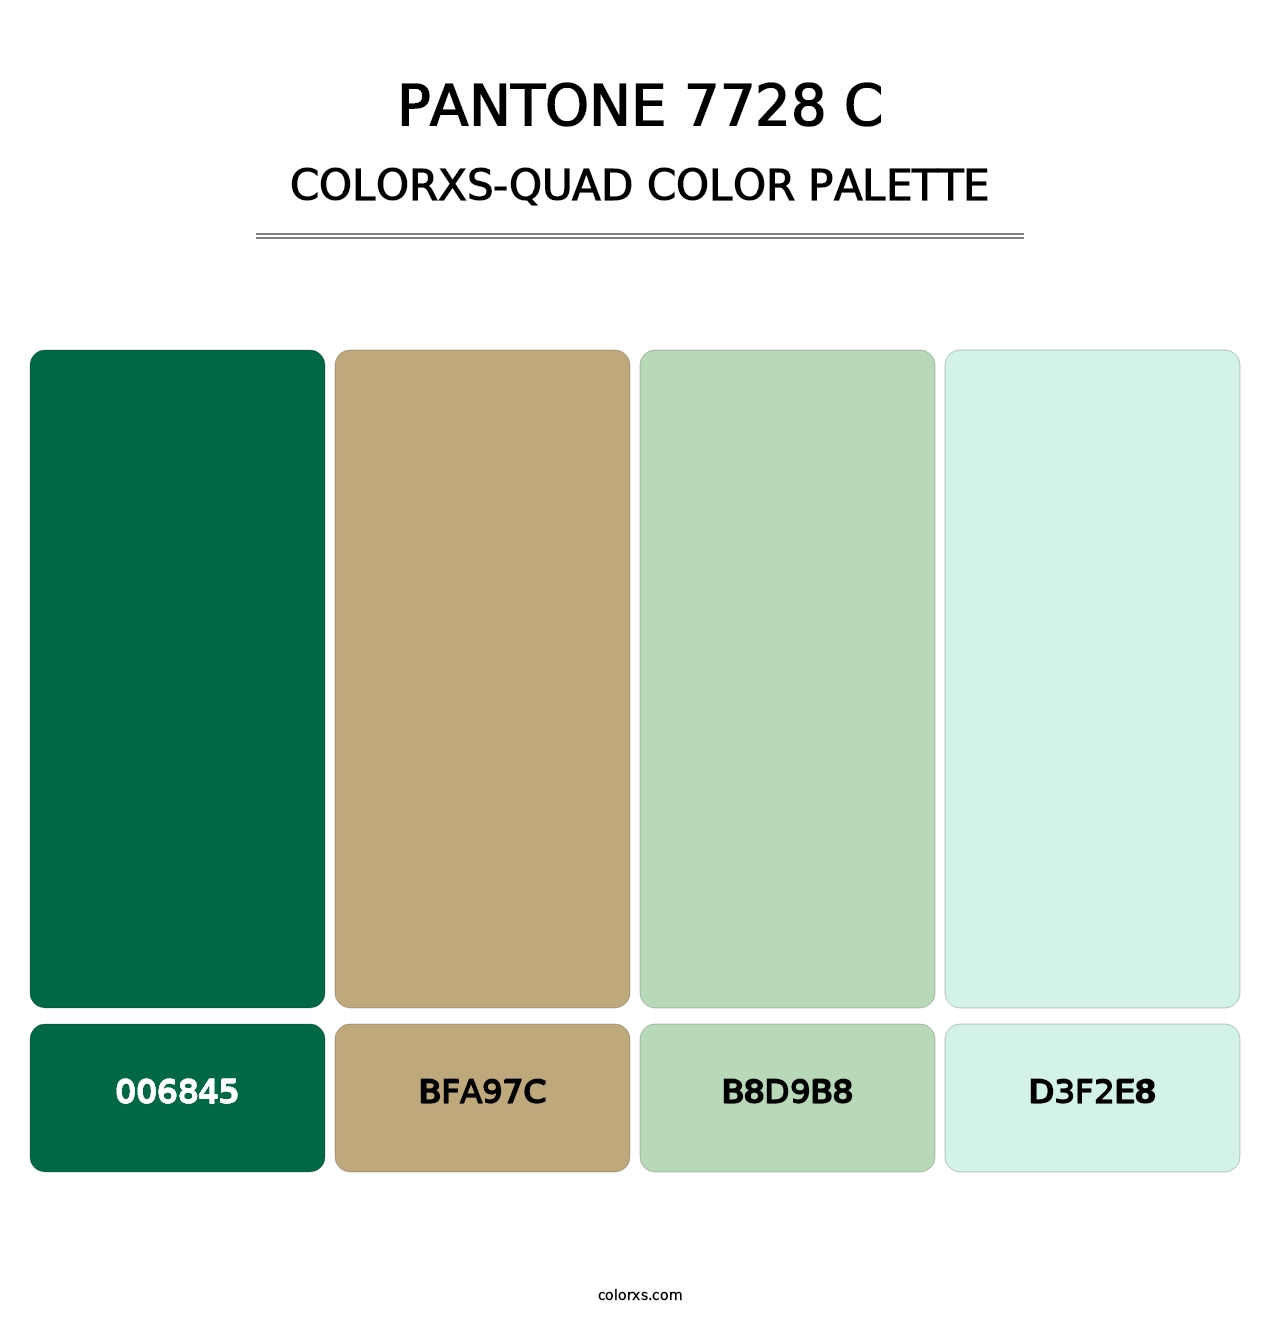 PANTONE 7728 C - Colorxs Quad Palette